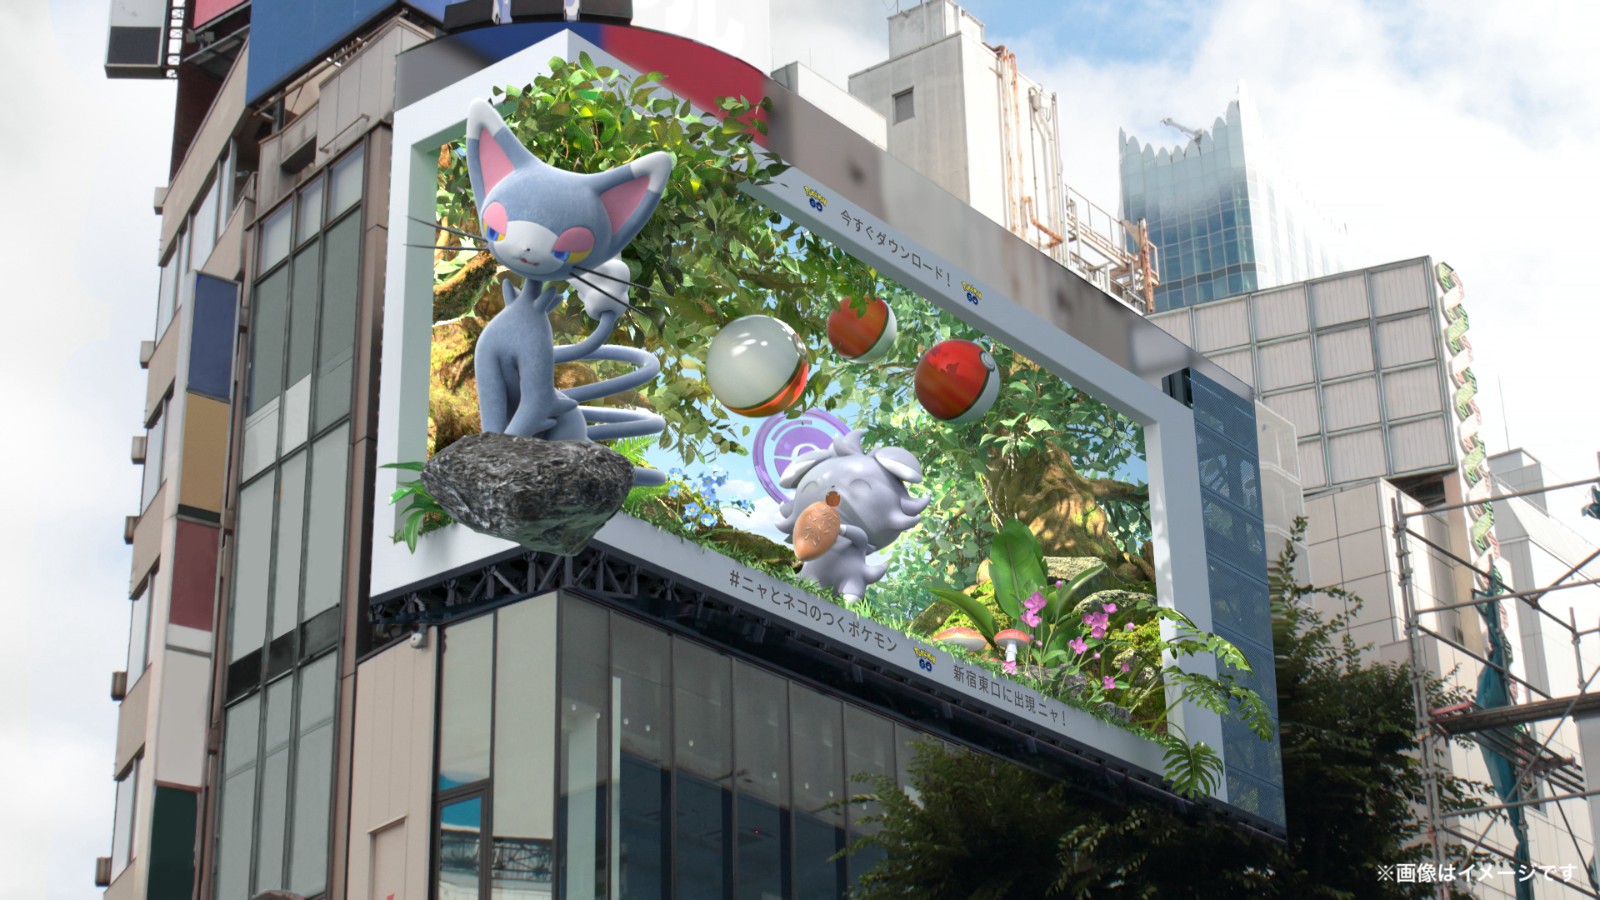 《宝可梦Go》在新宿投放新3D广告 大量猫咪宝可梦出镜